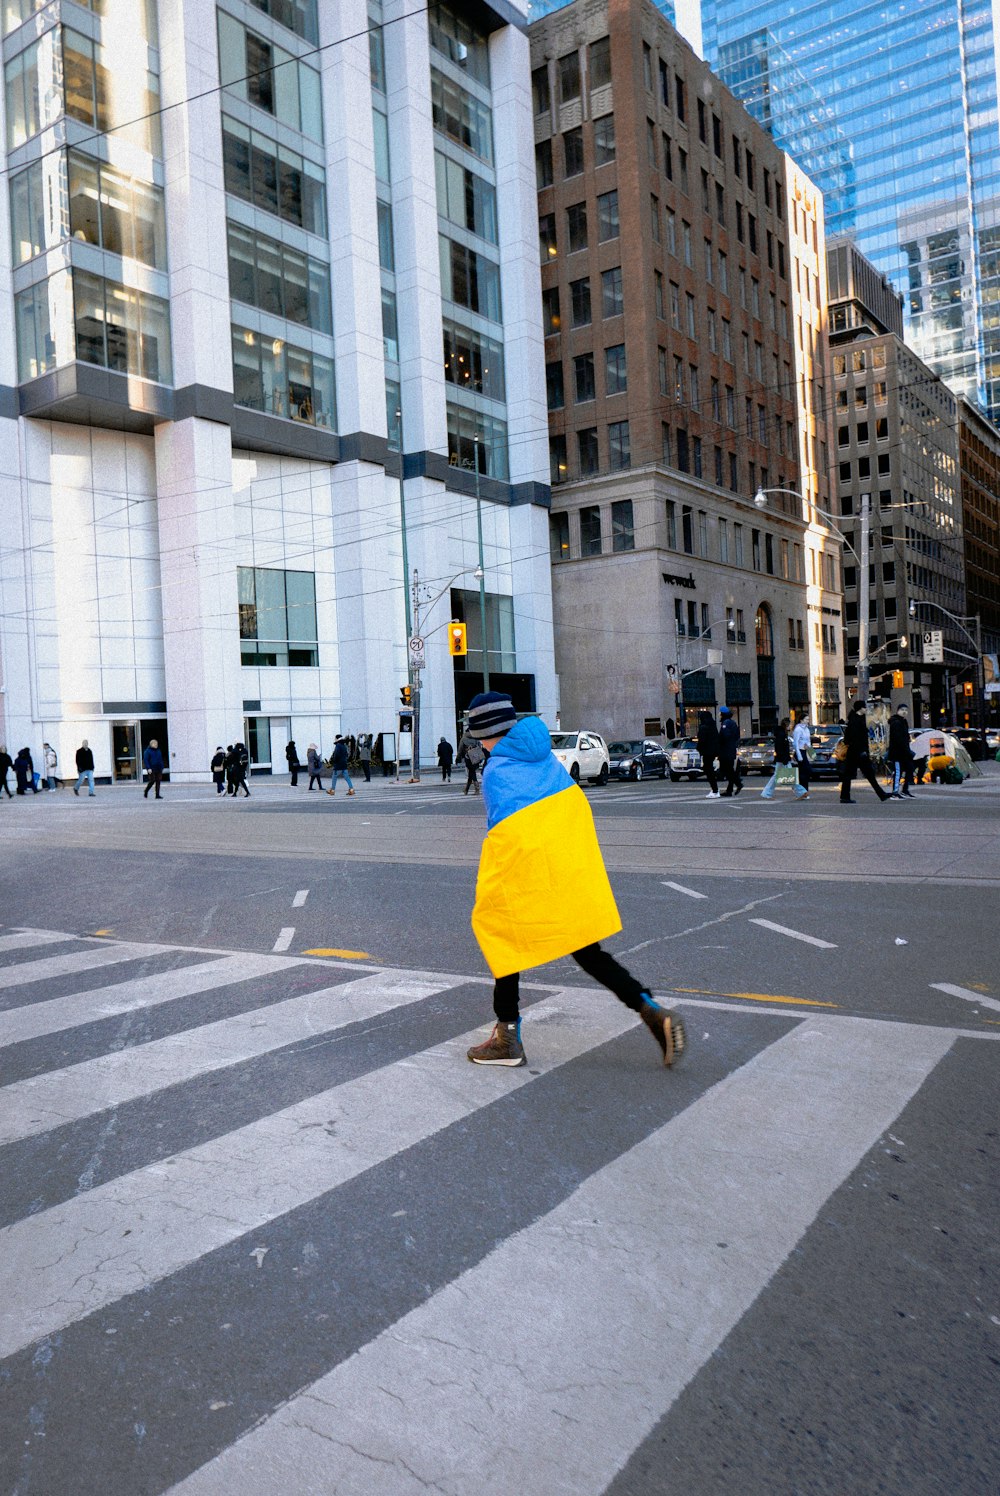 a person walking across a cross walk in a city